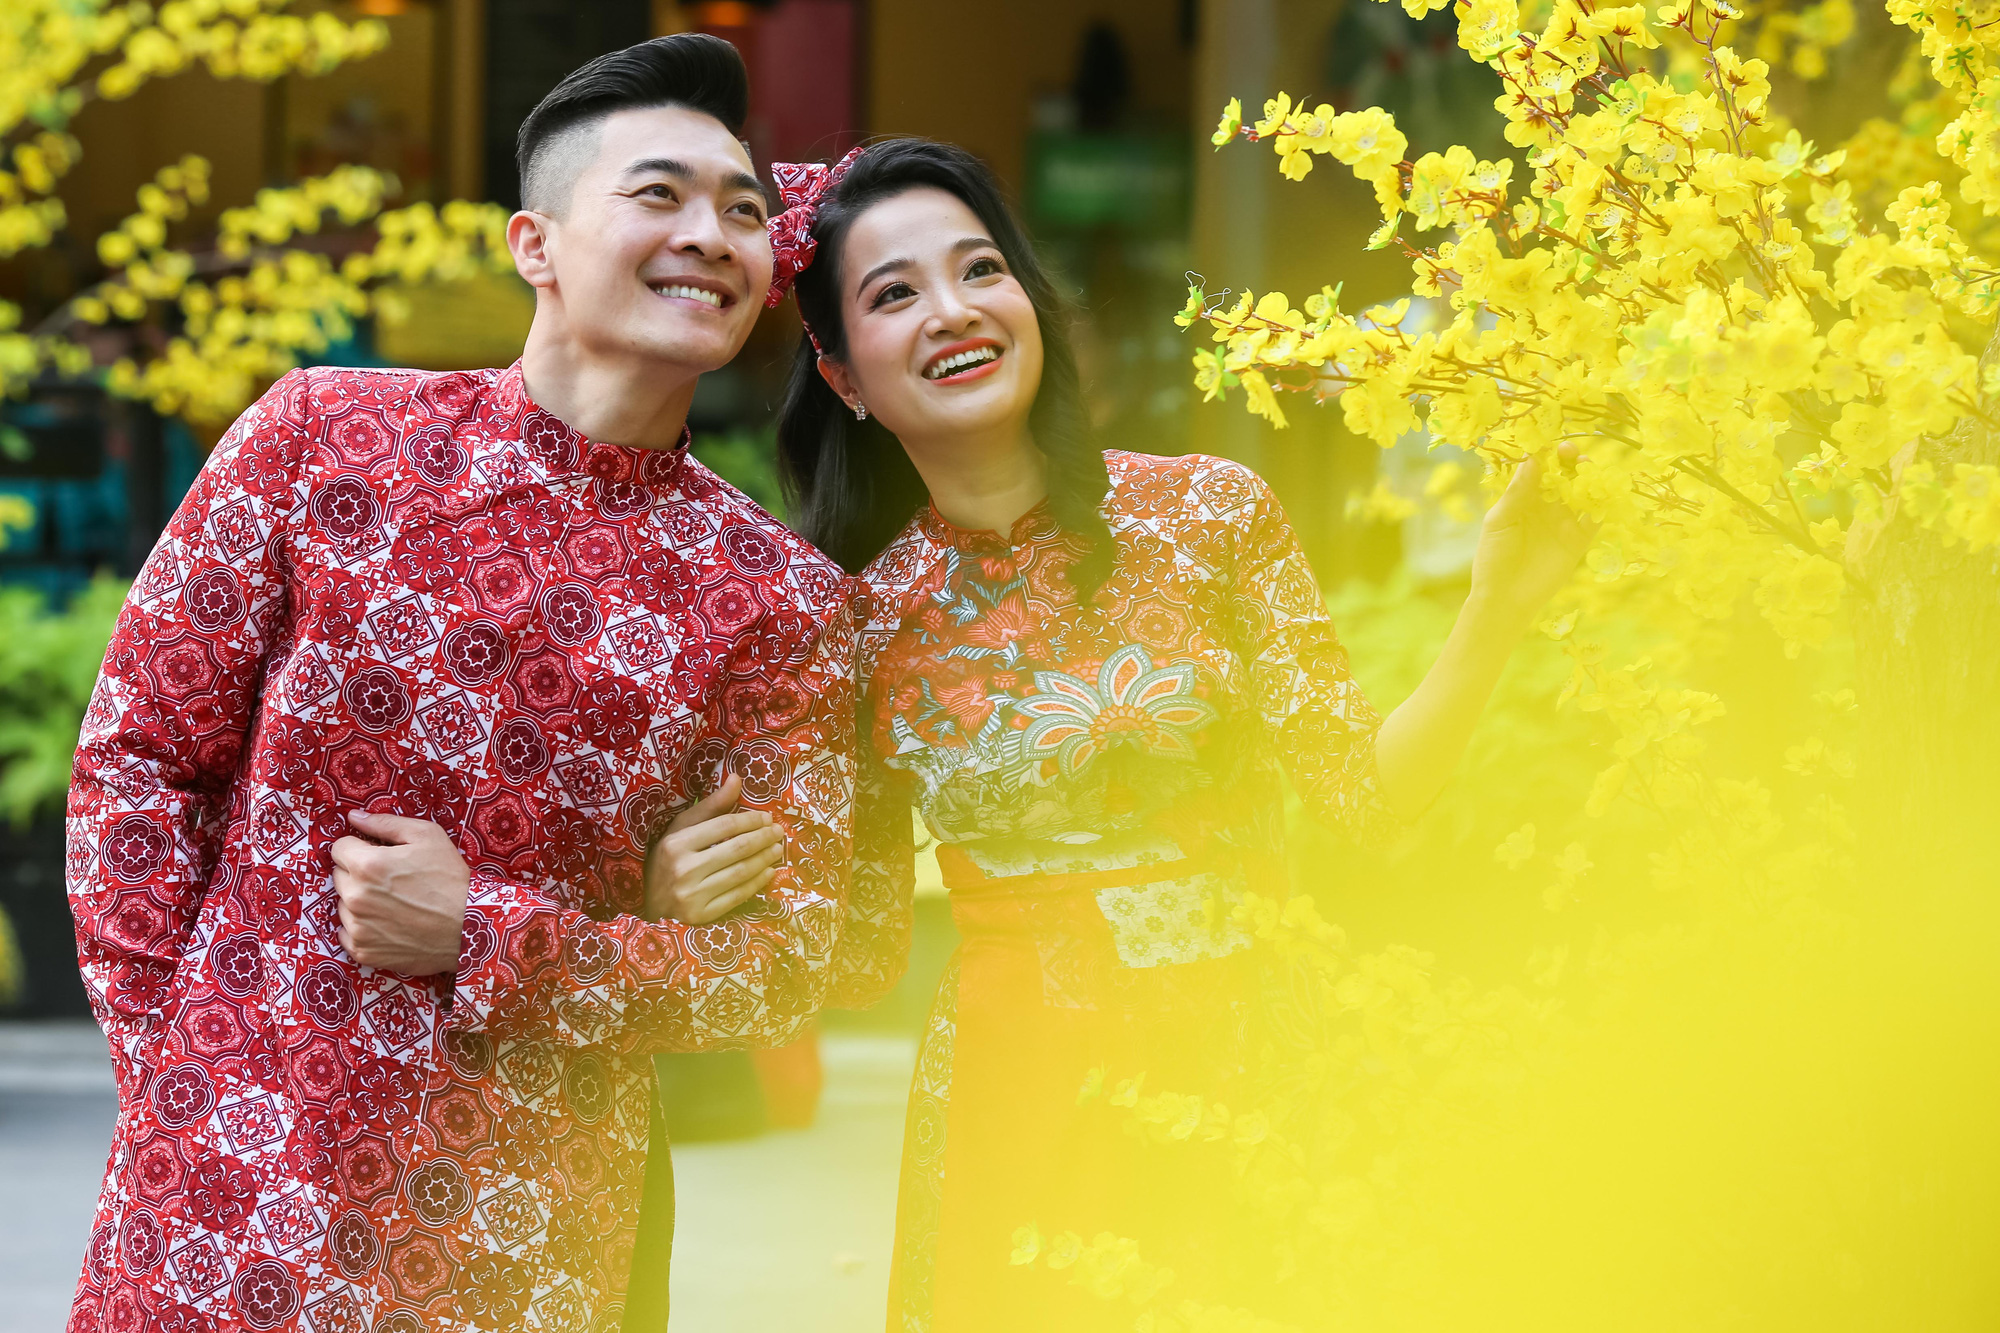 Áo dài: Với sự kết hợp giữa truyền thống và hiện đại, áo dài là trang phục quý giá của người phụ nữ Việt Nam. Mỗi chi tiết trên áo dài đều mang ý nghĩa sâu sắc và đẹp đẽ. Hãy ngắm nhìn bức hình và cảm nhận vẻ đẹp tinh tế của chiếc áo dài.